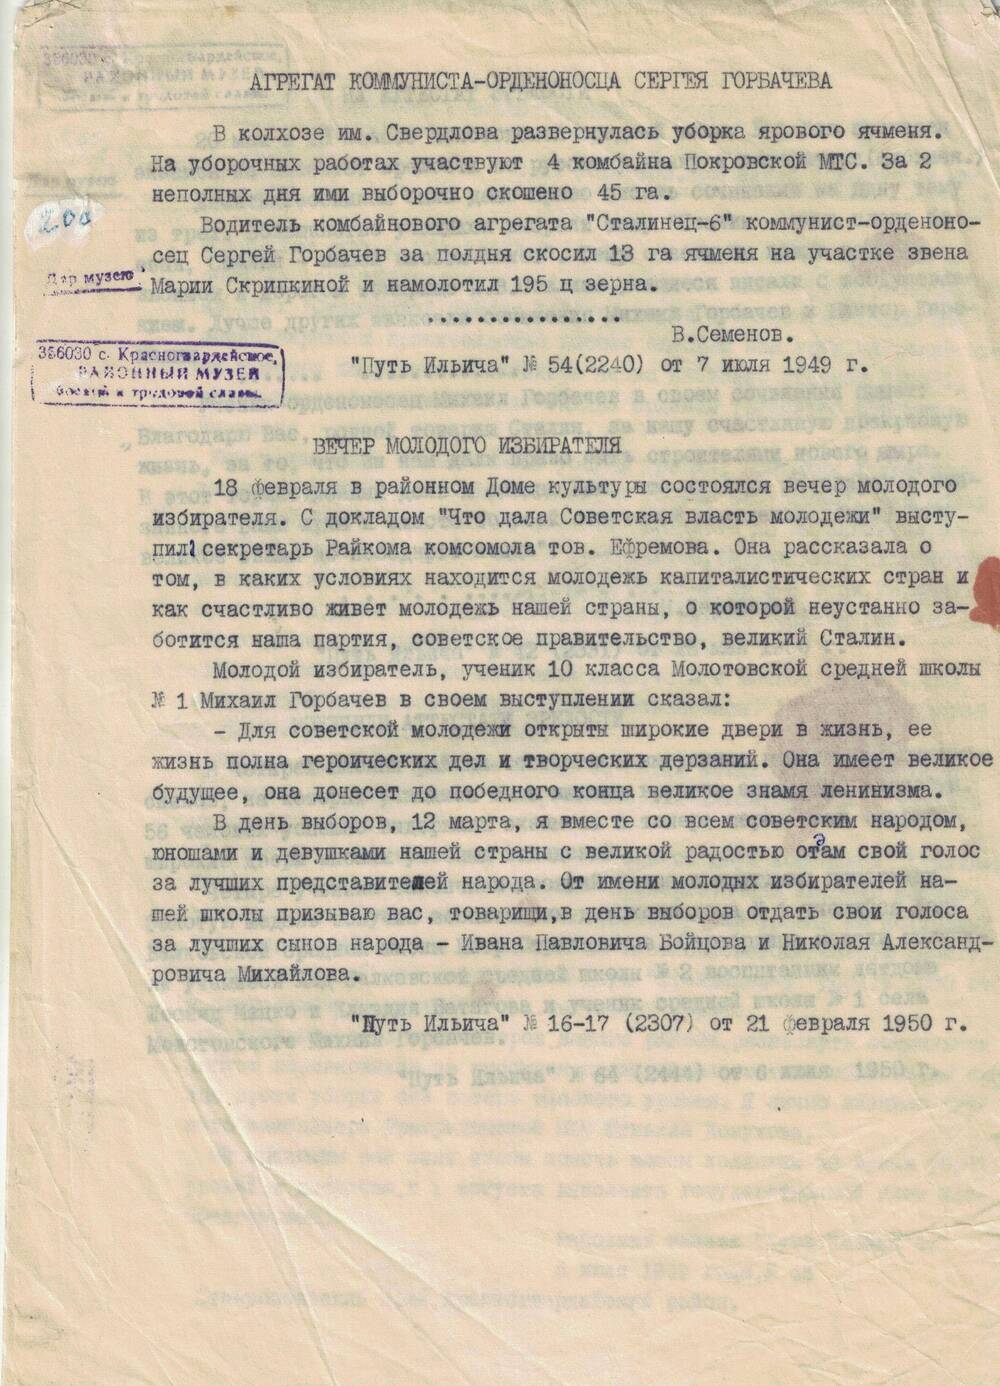 Выдержки из статей газеты Путь Ильича за 1949 - 1950 г. о Горбачеве М.С.